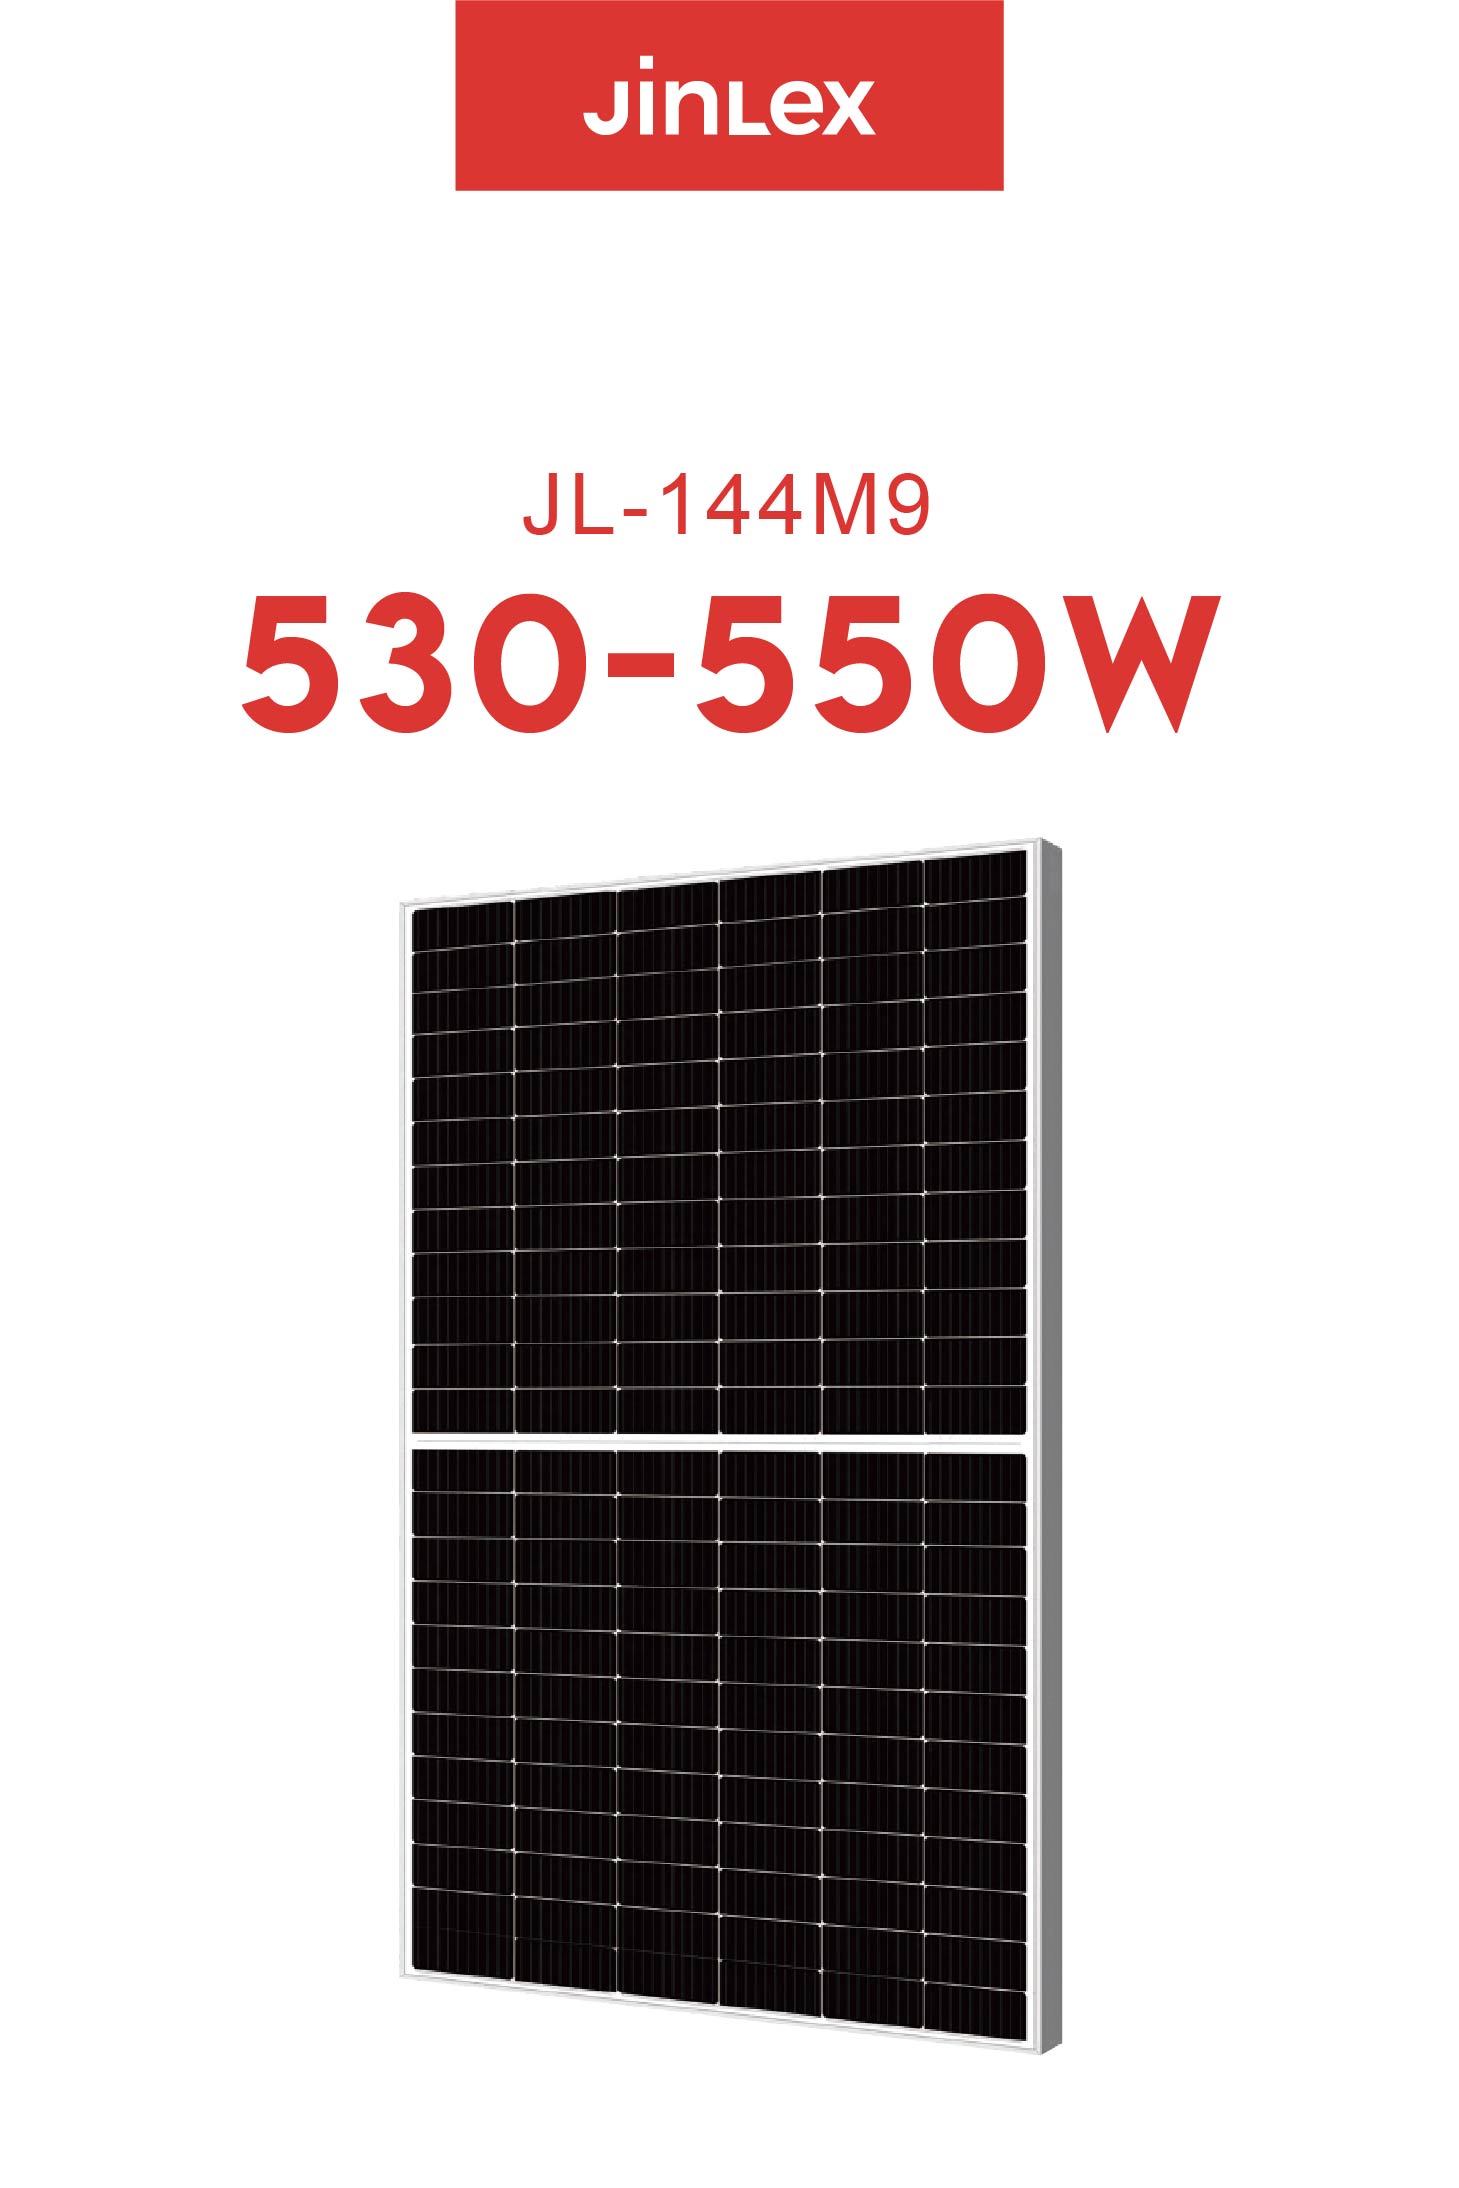 JL(530~550W)-144M9